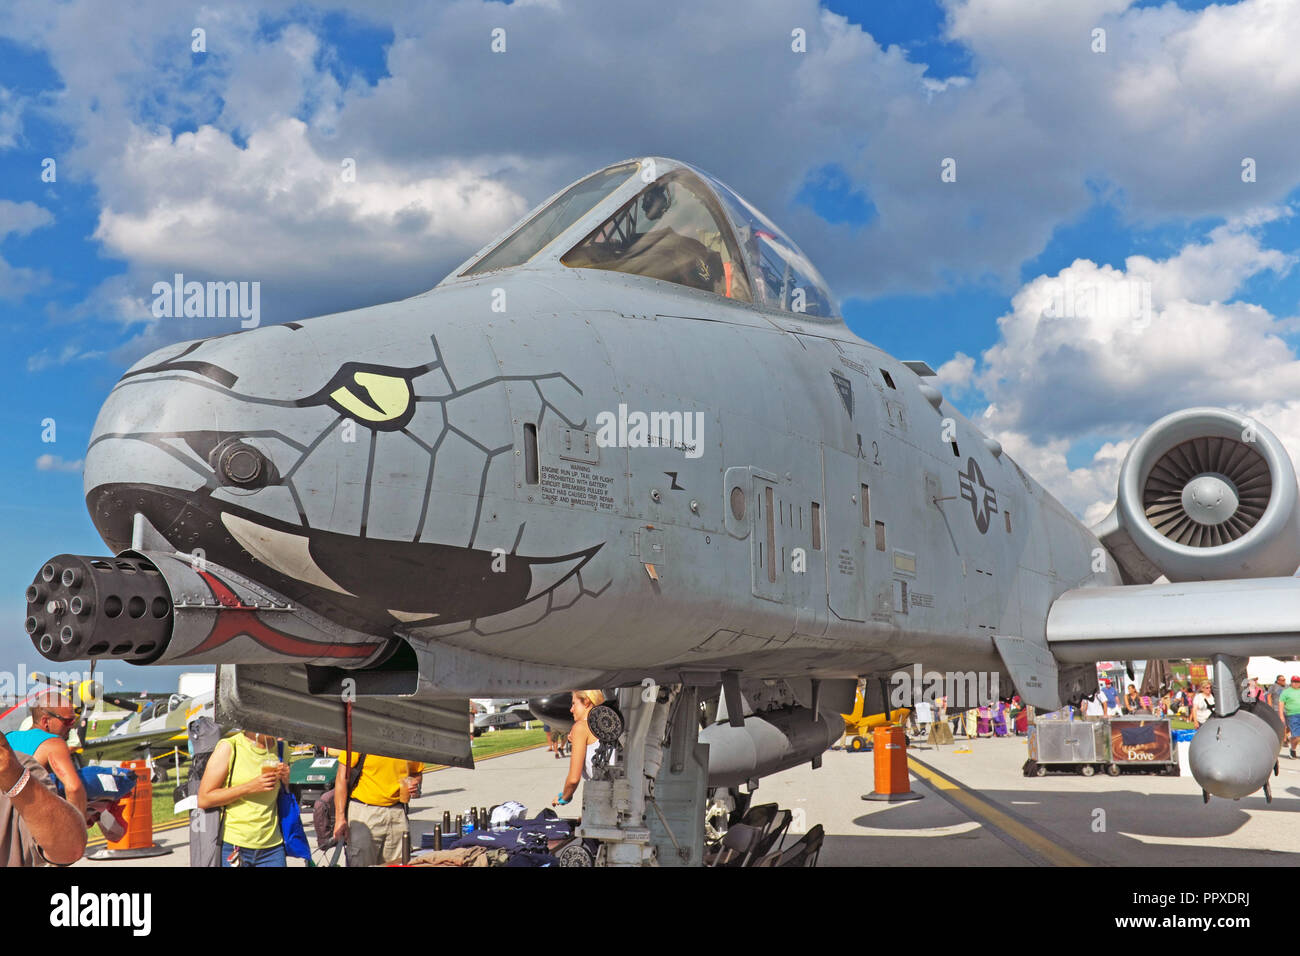 US-Luftwaffe A-10 warthog Kampfflugzeugs mit Serpentine nose art auf Anzeige an die 2018 Cleveland National Air Show in Cleveland, Ohio, USA. Stockfoto